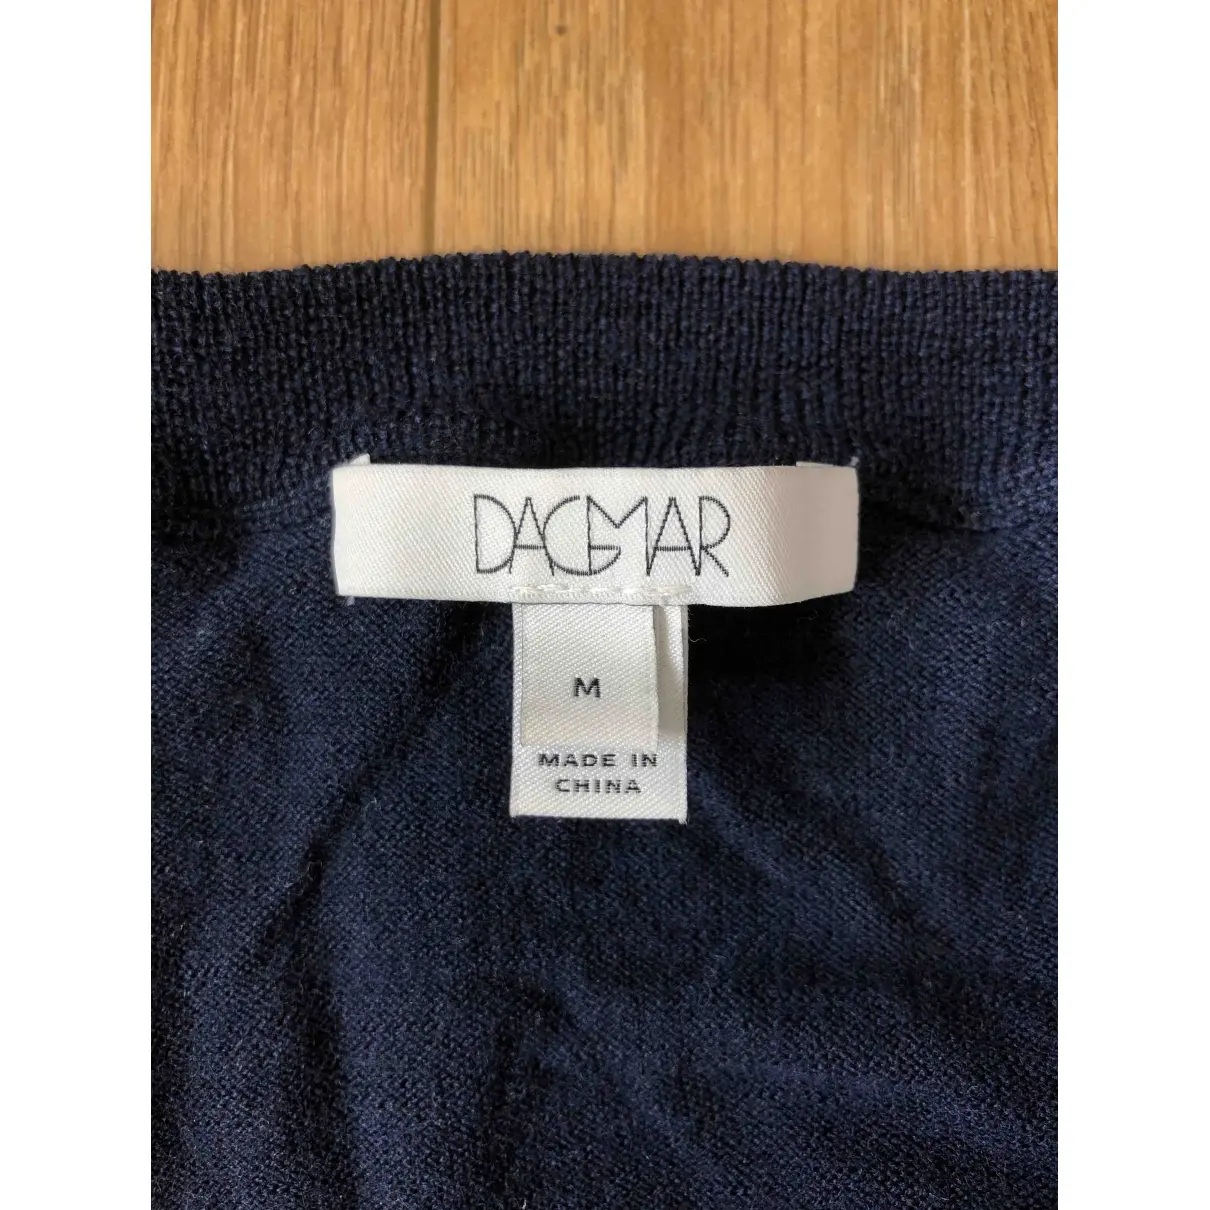 Buy House Of Dagmar Wool cardigan online